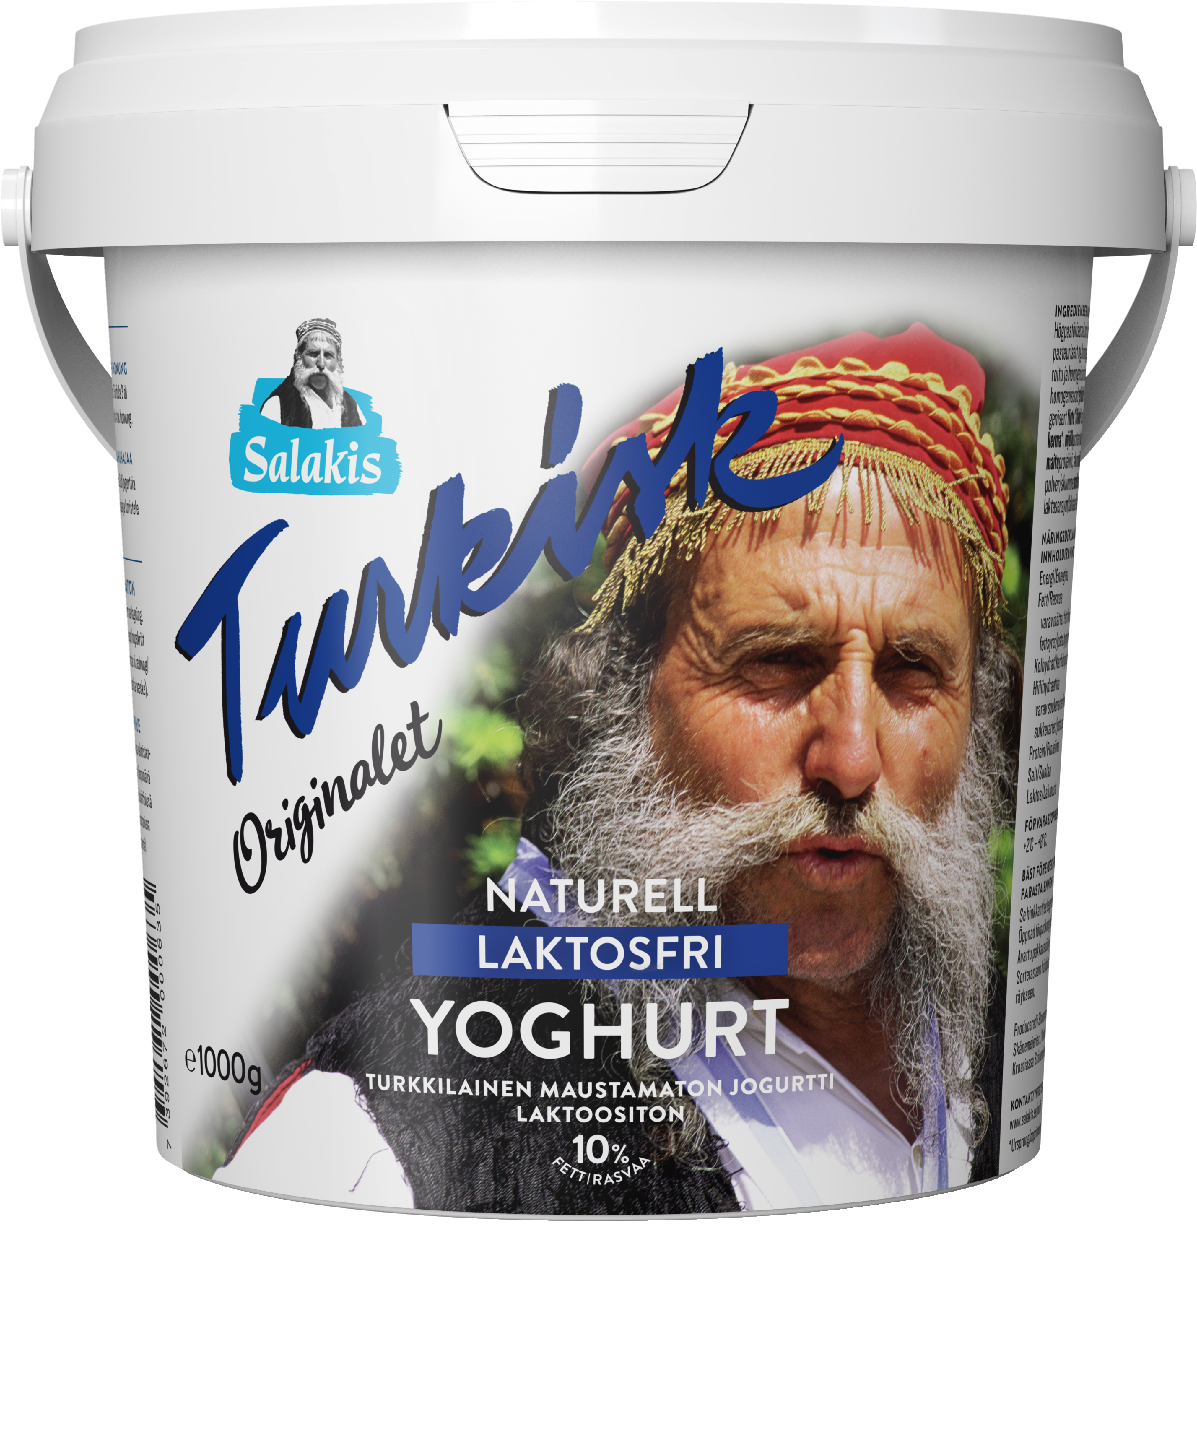 Salakis turkkilainen maustamaton jogurtti 1kg 10% laktoositon